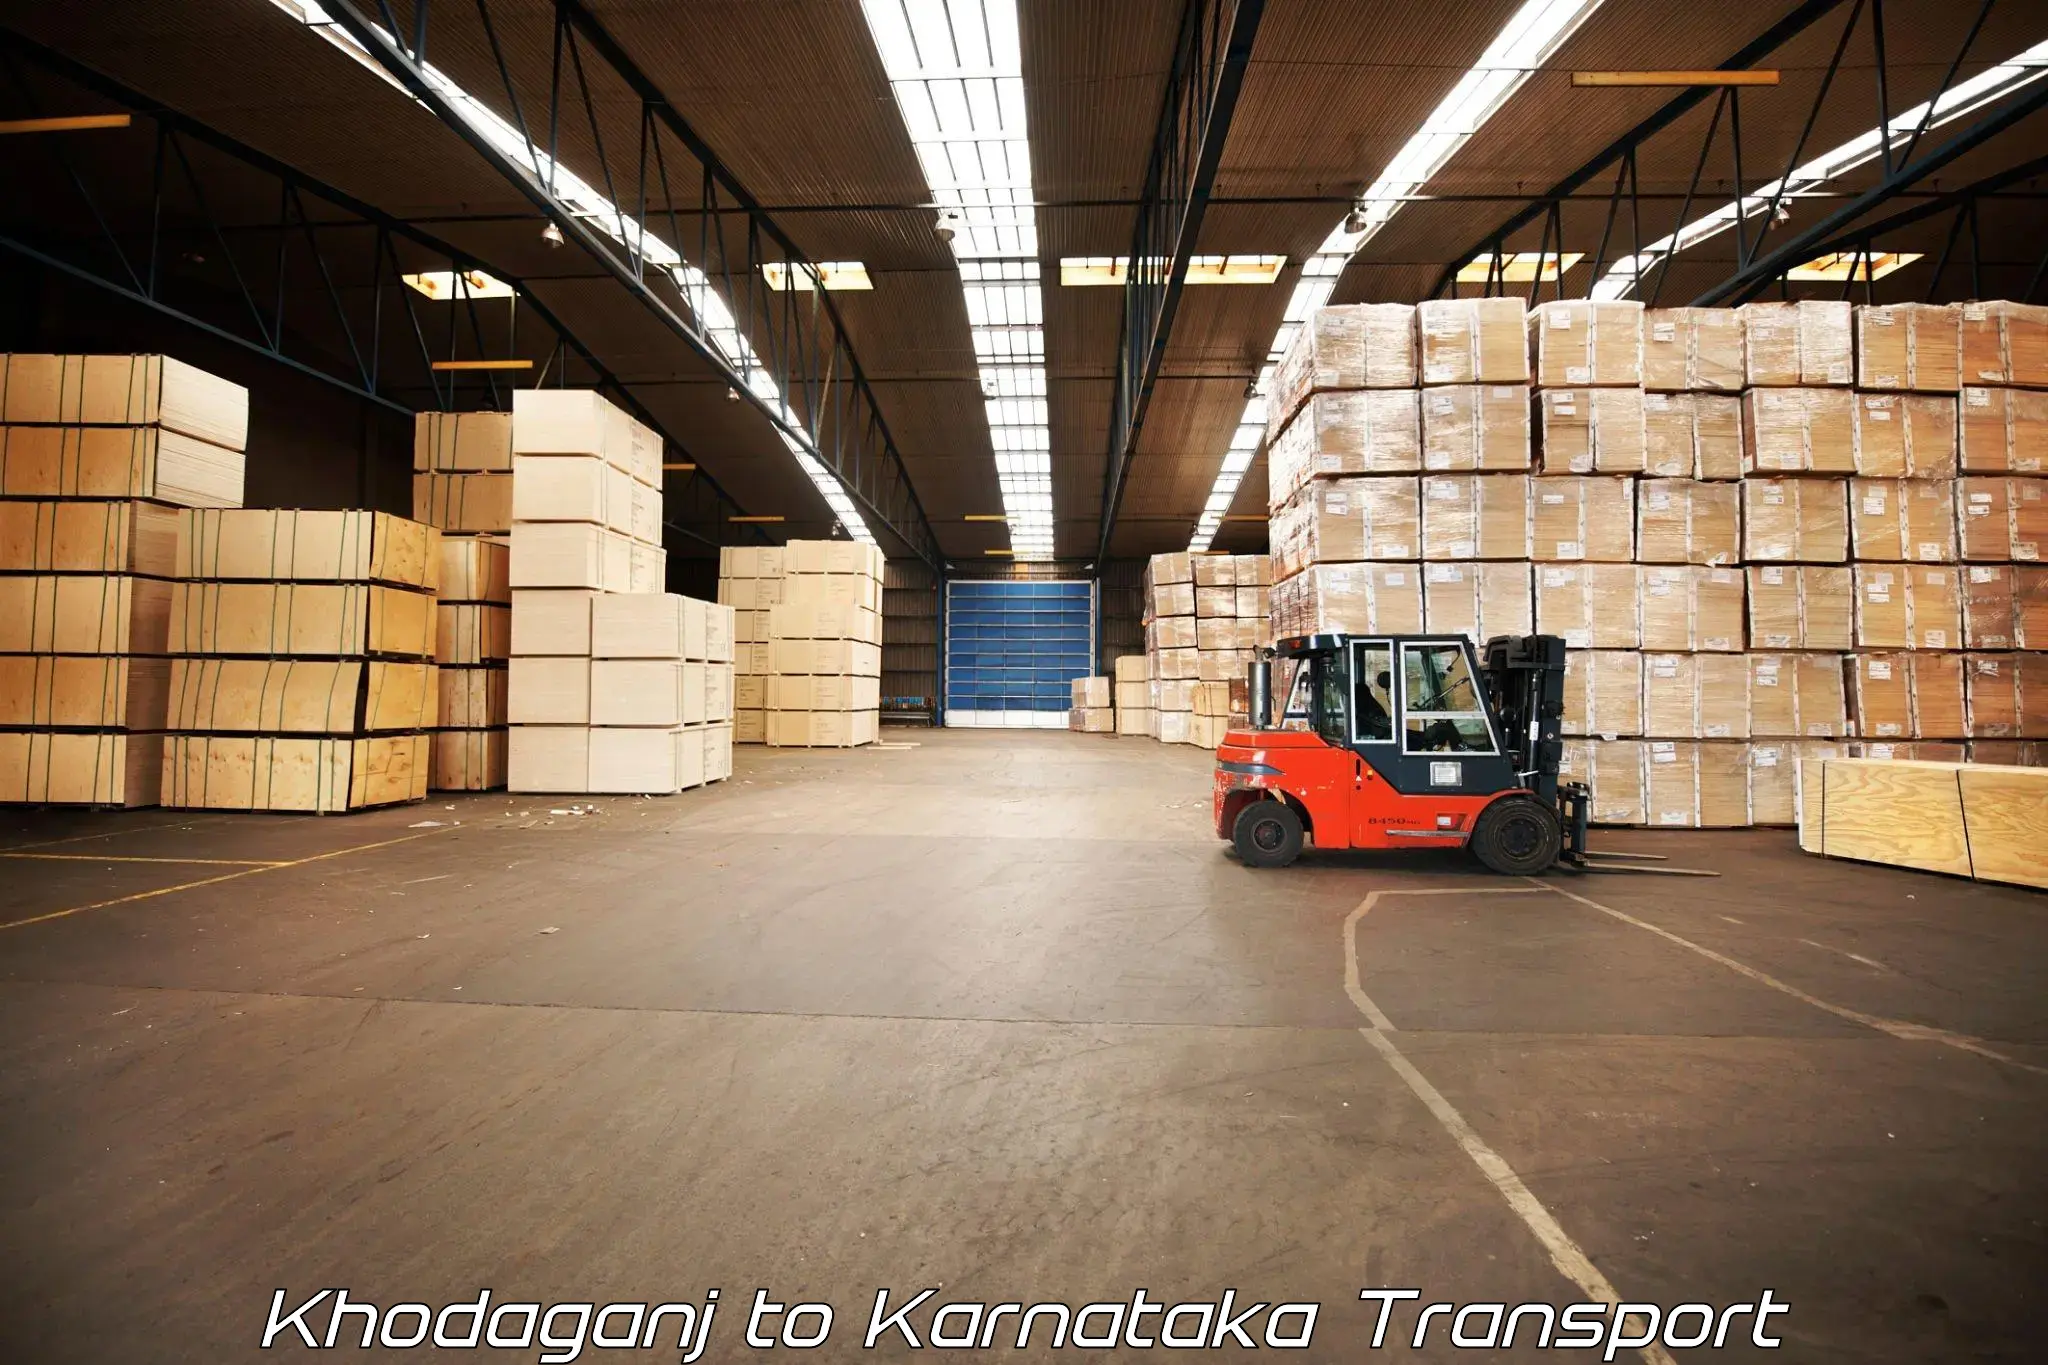 Air cargo transport services Khodaganj to Ramanagara